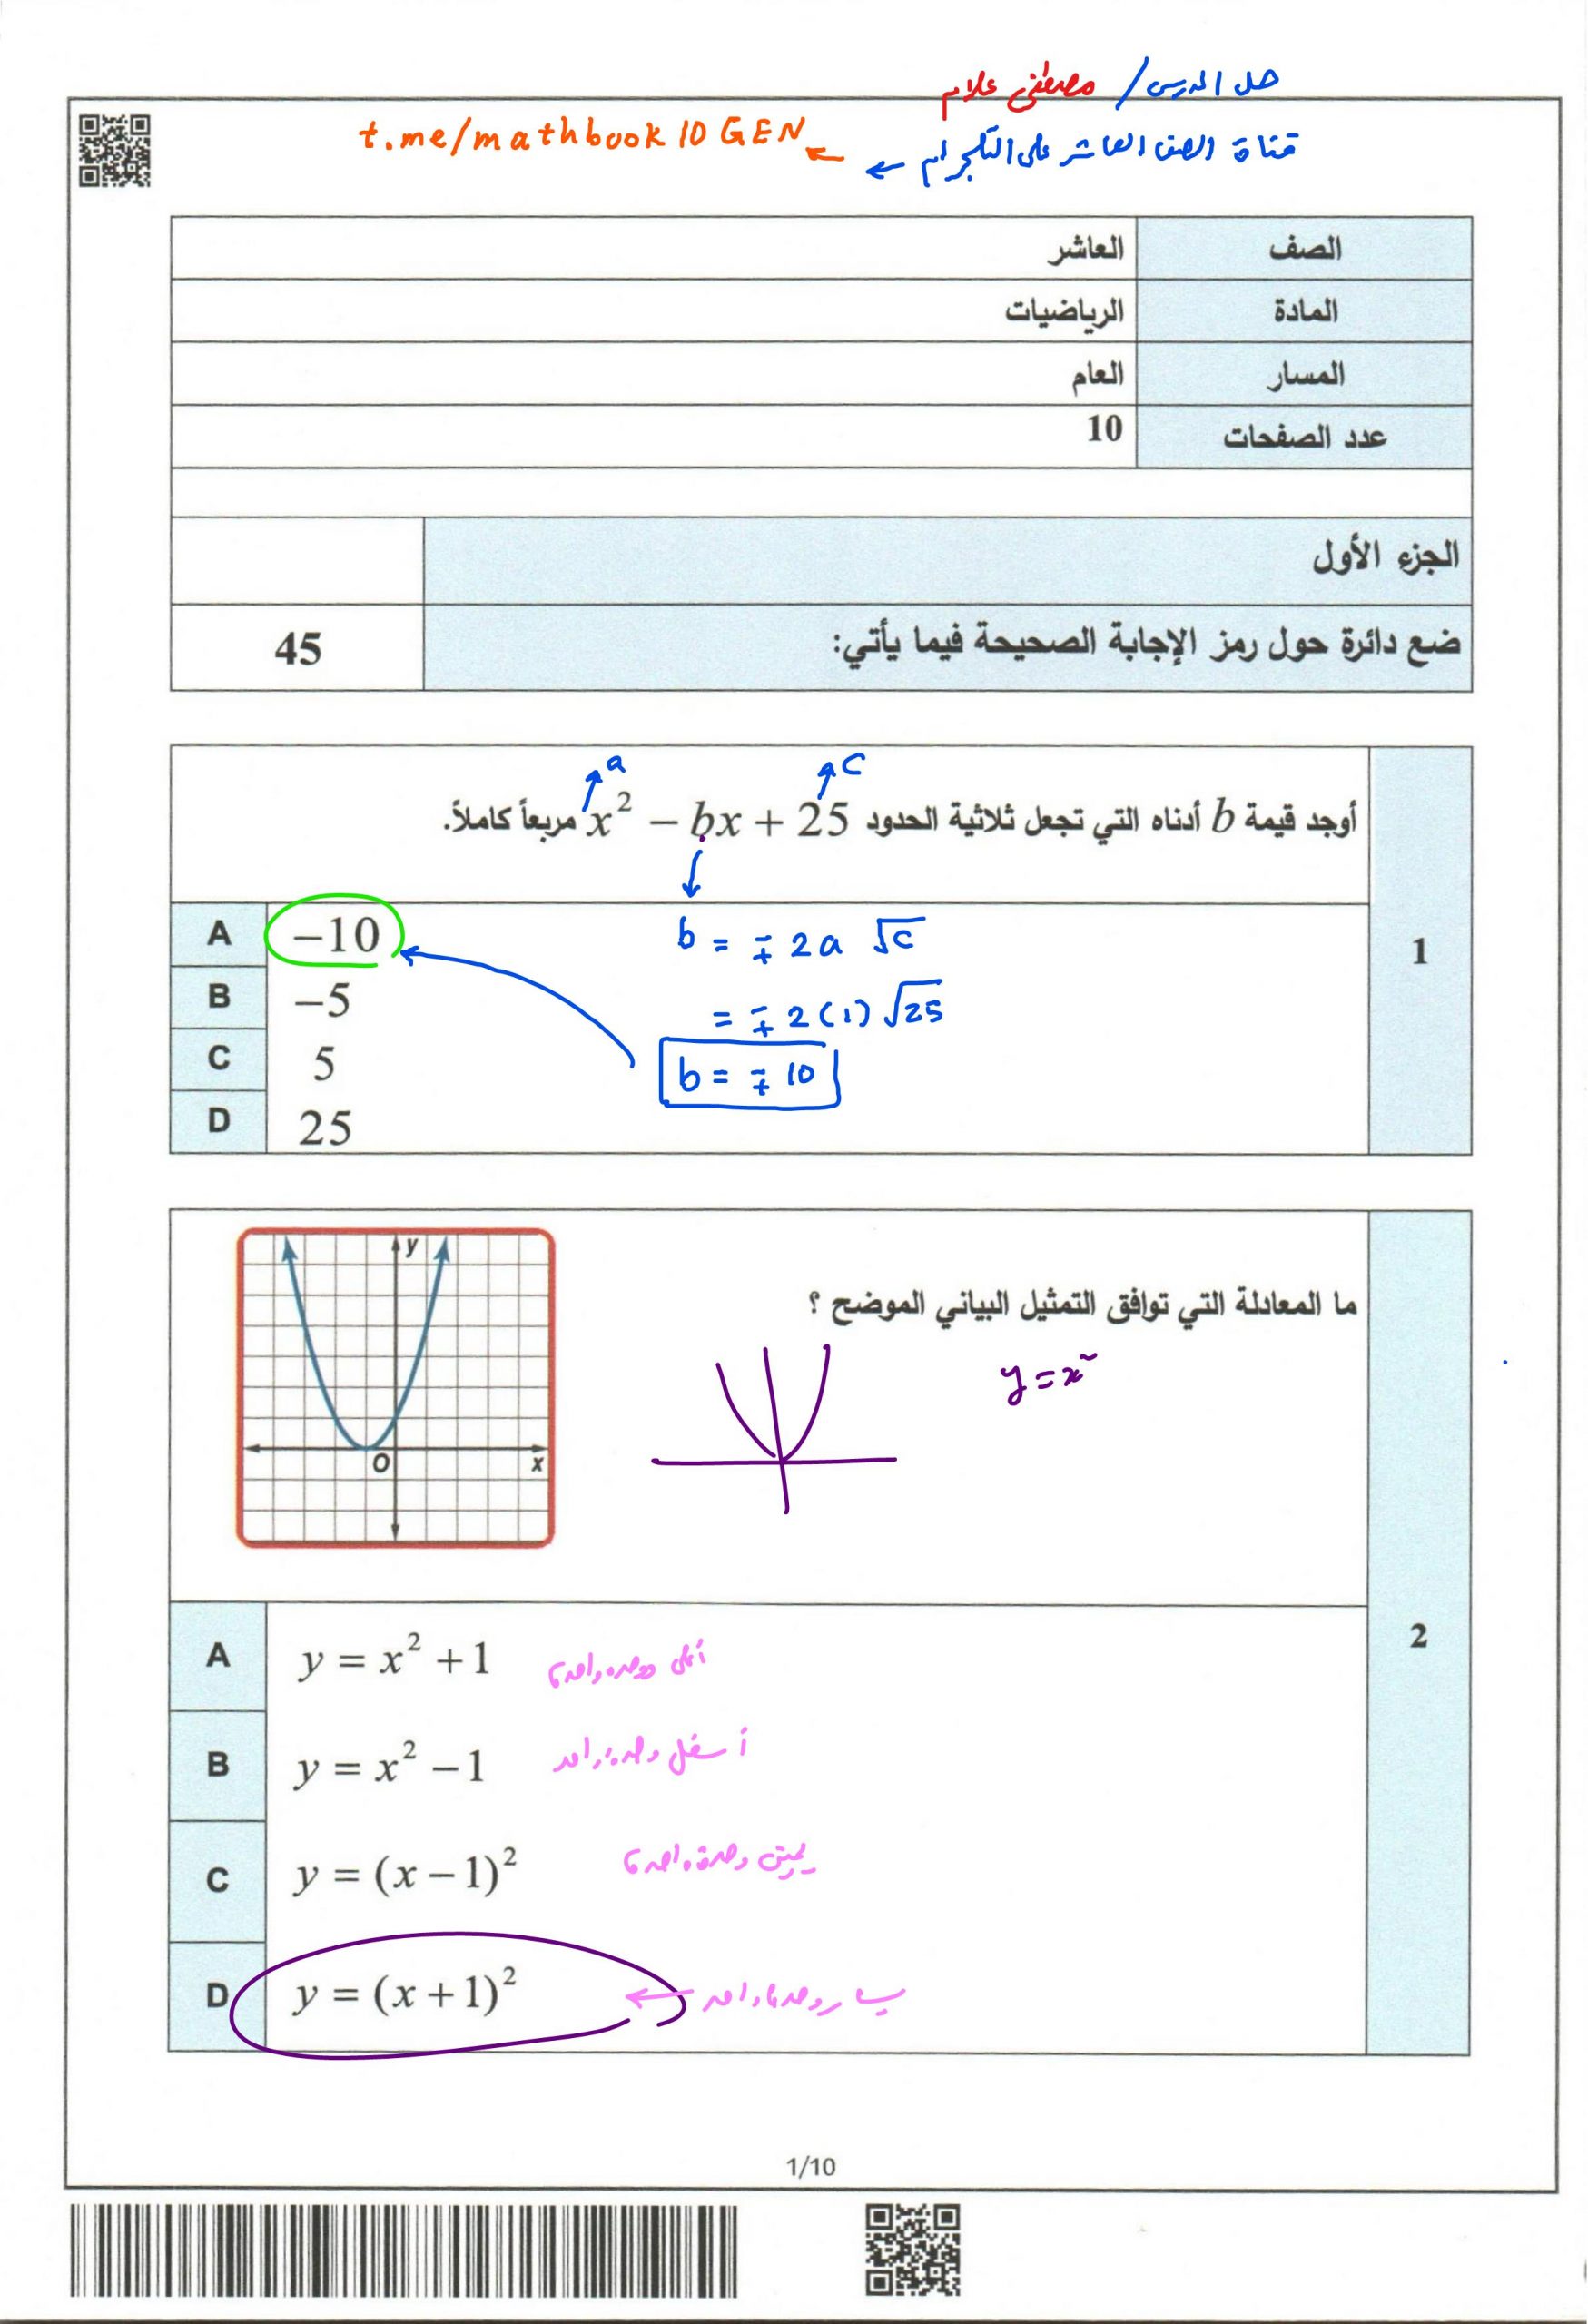 حل امتحان نهاية الفصل الدرسي الاول 2019-2020 الصف الثاني عشر عام مادة الرياضيات المتكاملة